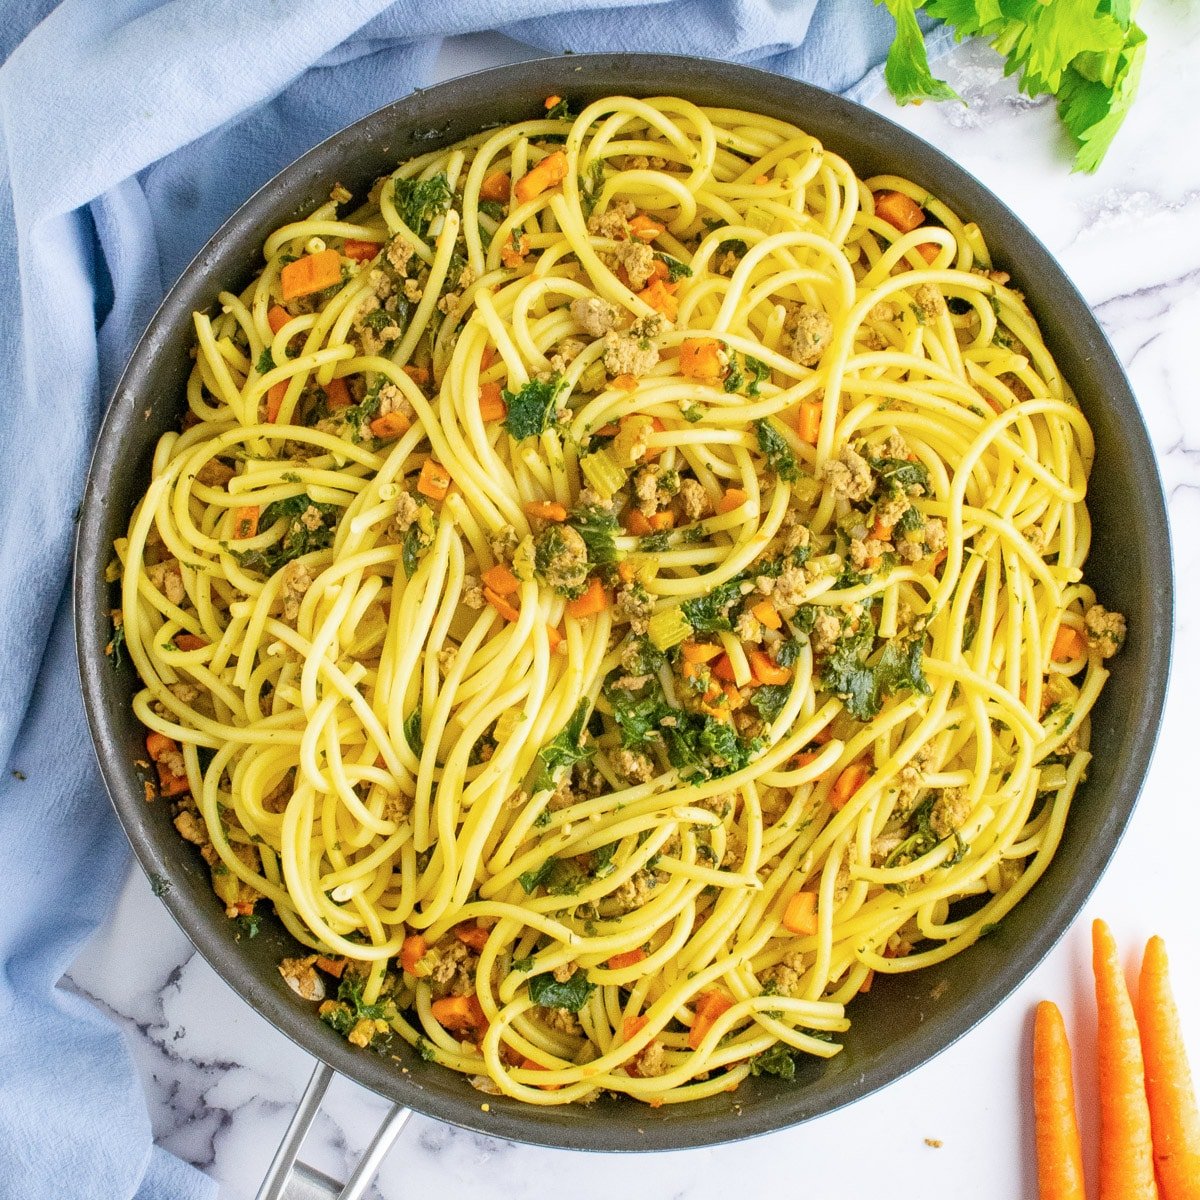 Veggies and pasta in a saucepan